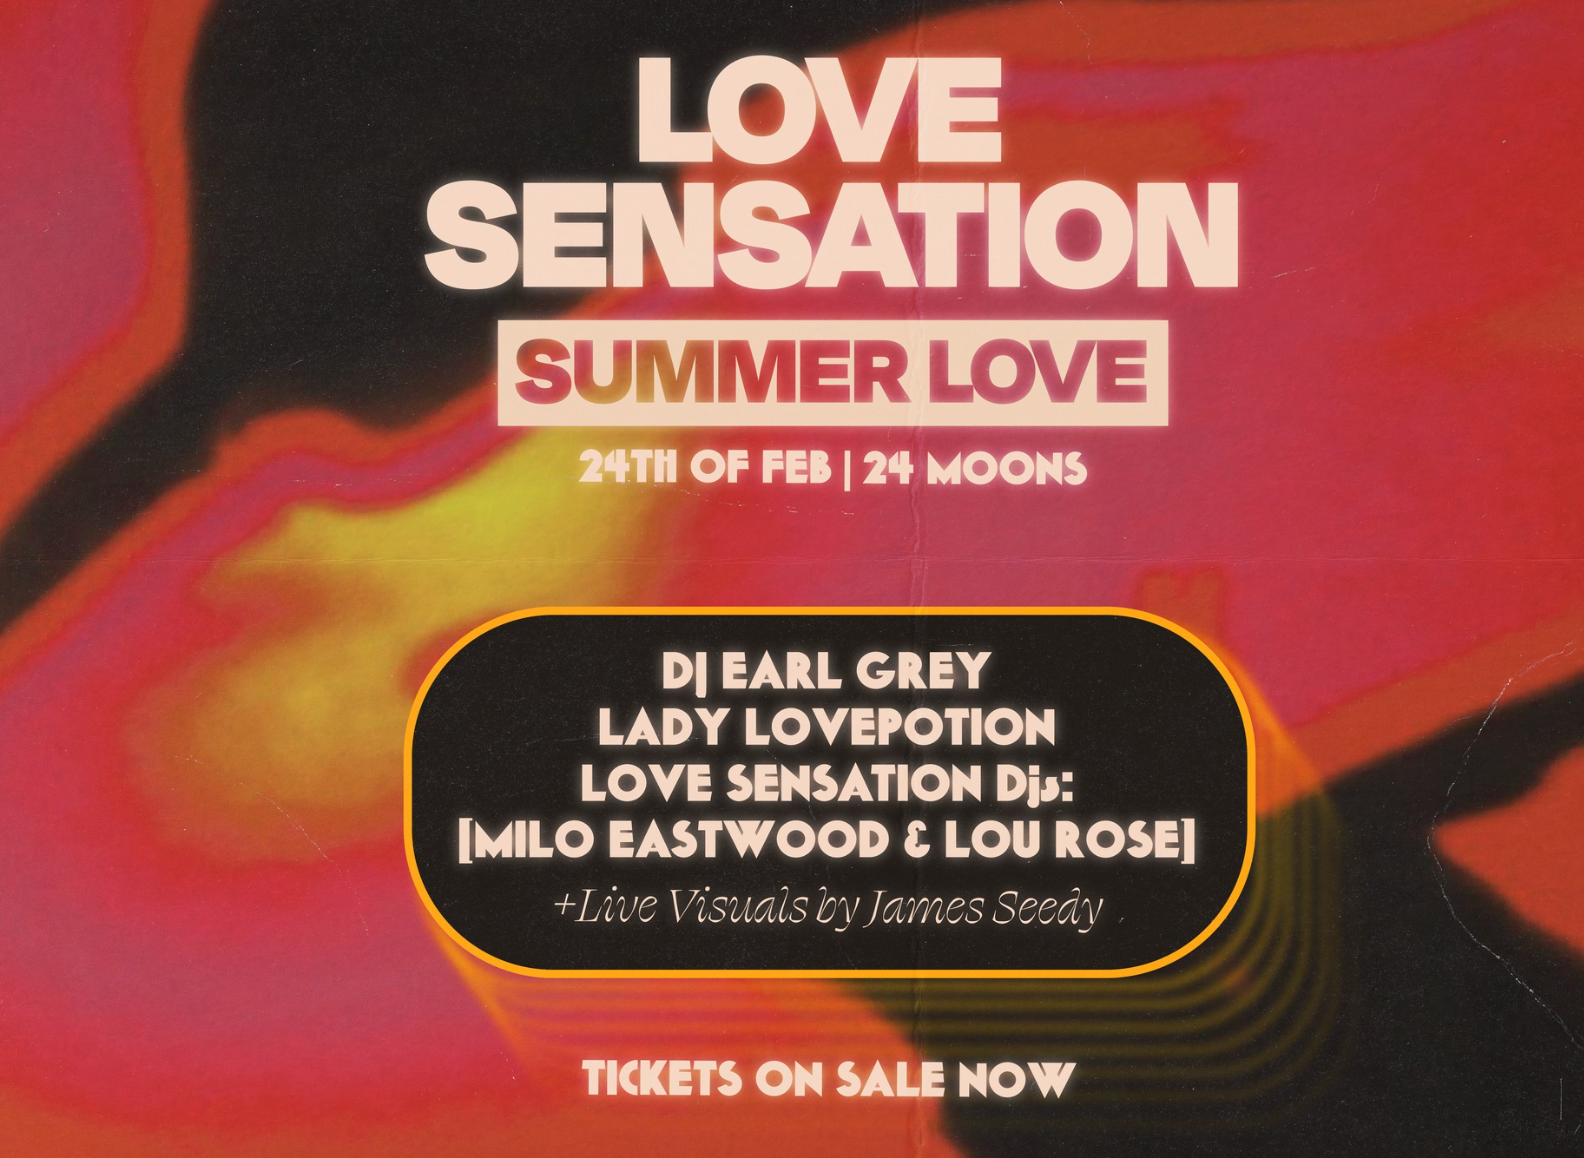 Love Sensation: Summer Love - Página frontal